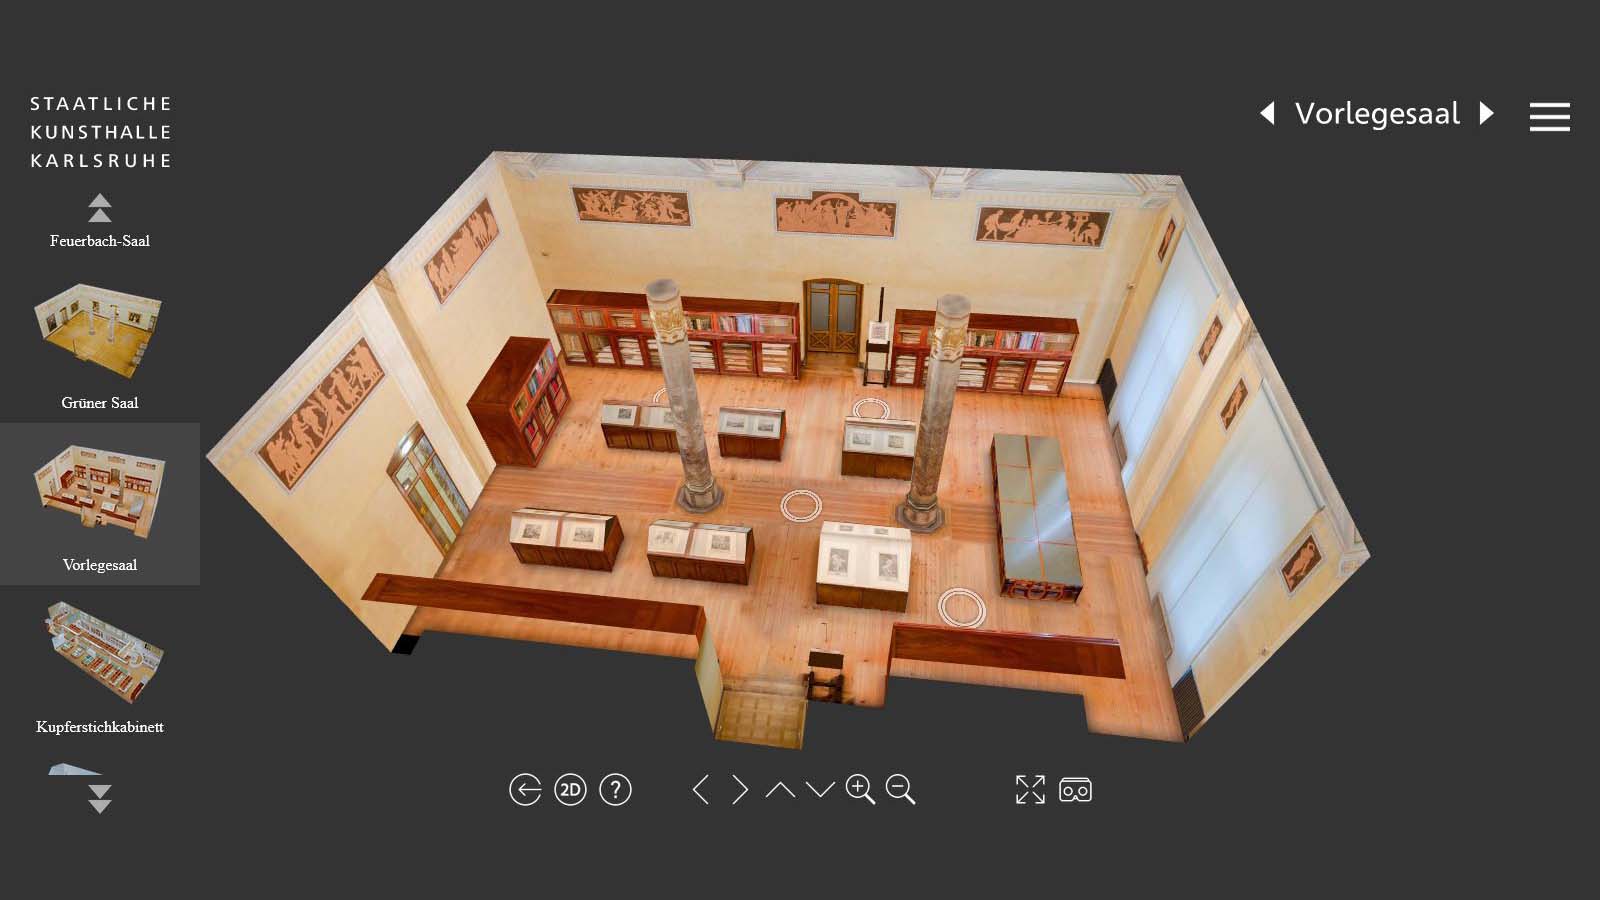 Screenshot aus der 360 Grad Tour der Kunsthalle, auf dem ein 3D Modell des Vorlegesaals zu sehen ist.